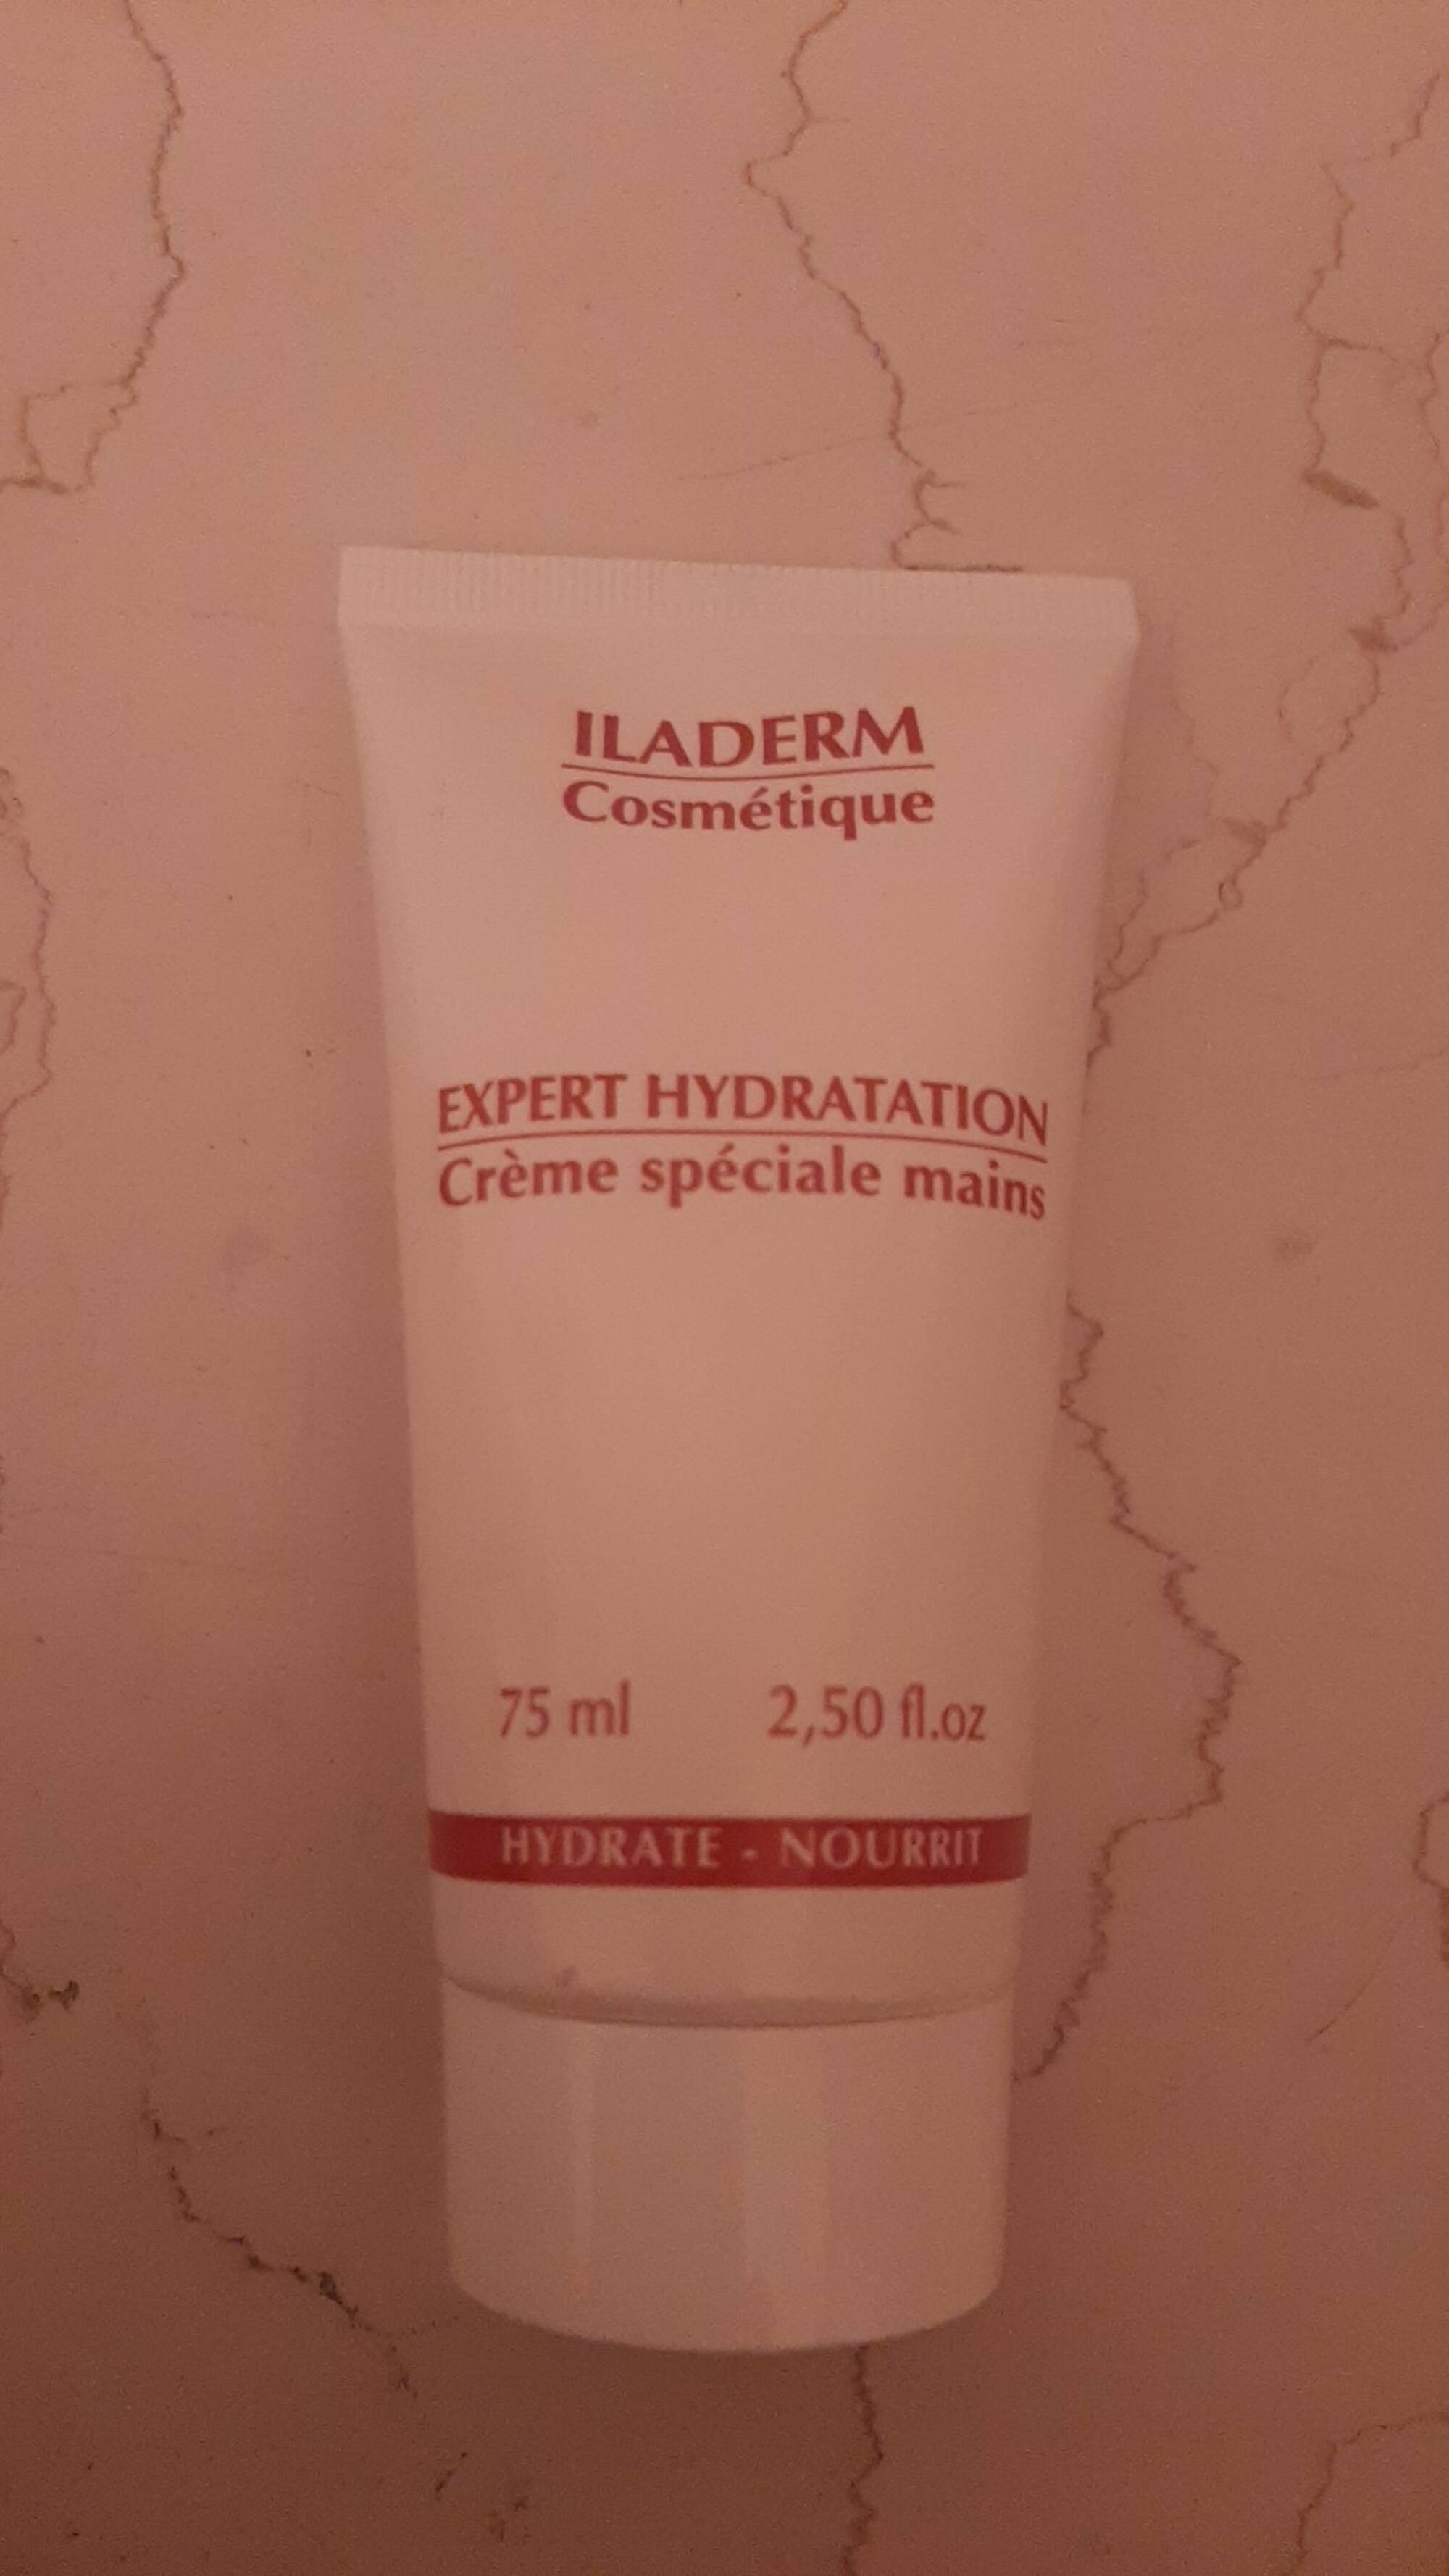 ILADERM COMESTIQUE - Expert hydratation - Crème spéciale mains